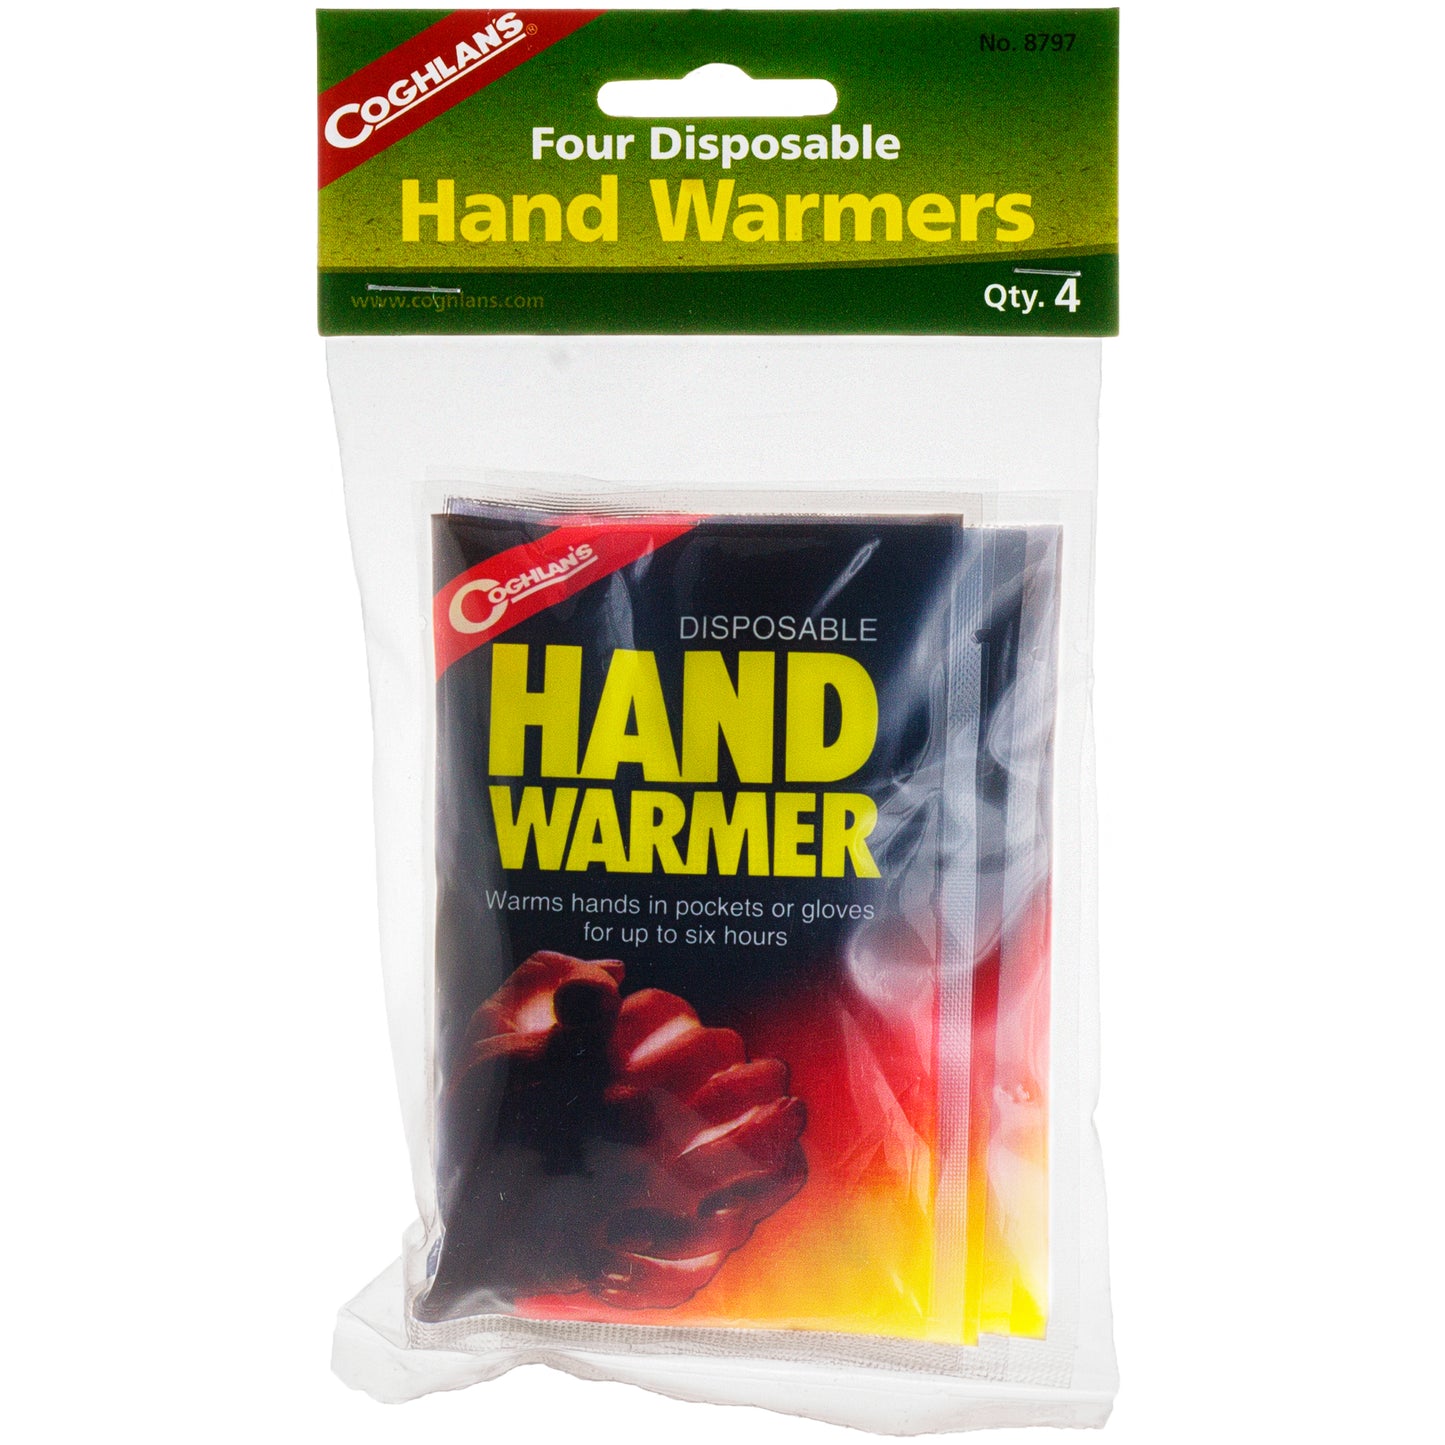 HAND WARMERS